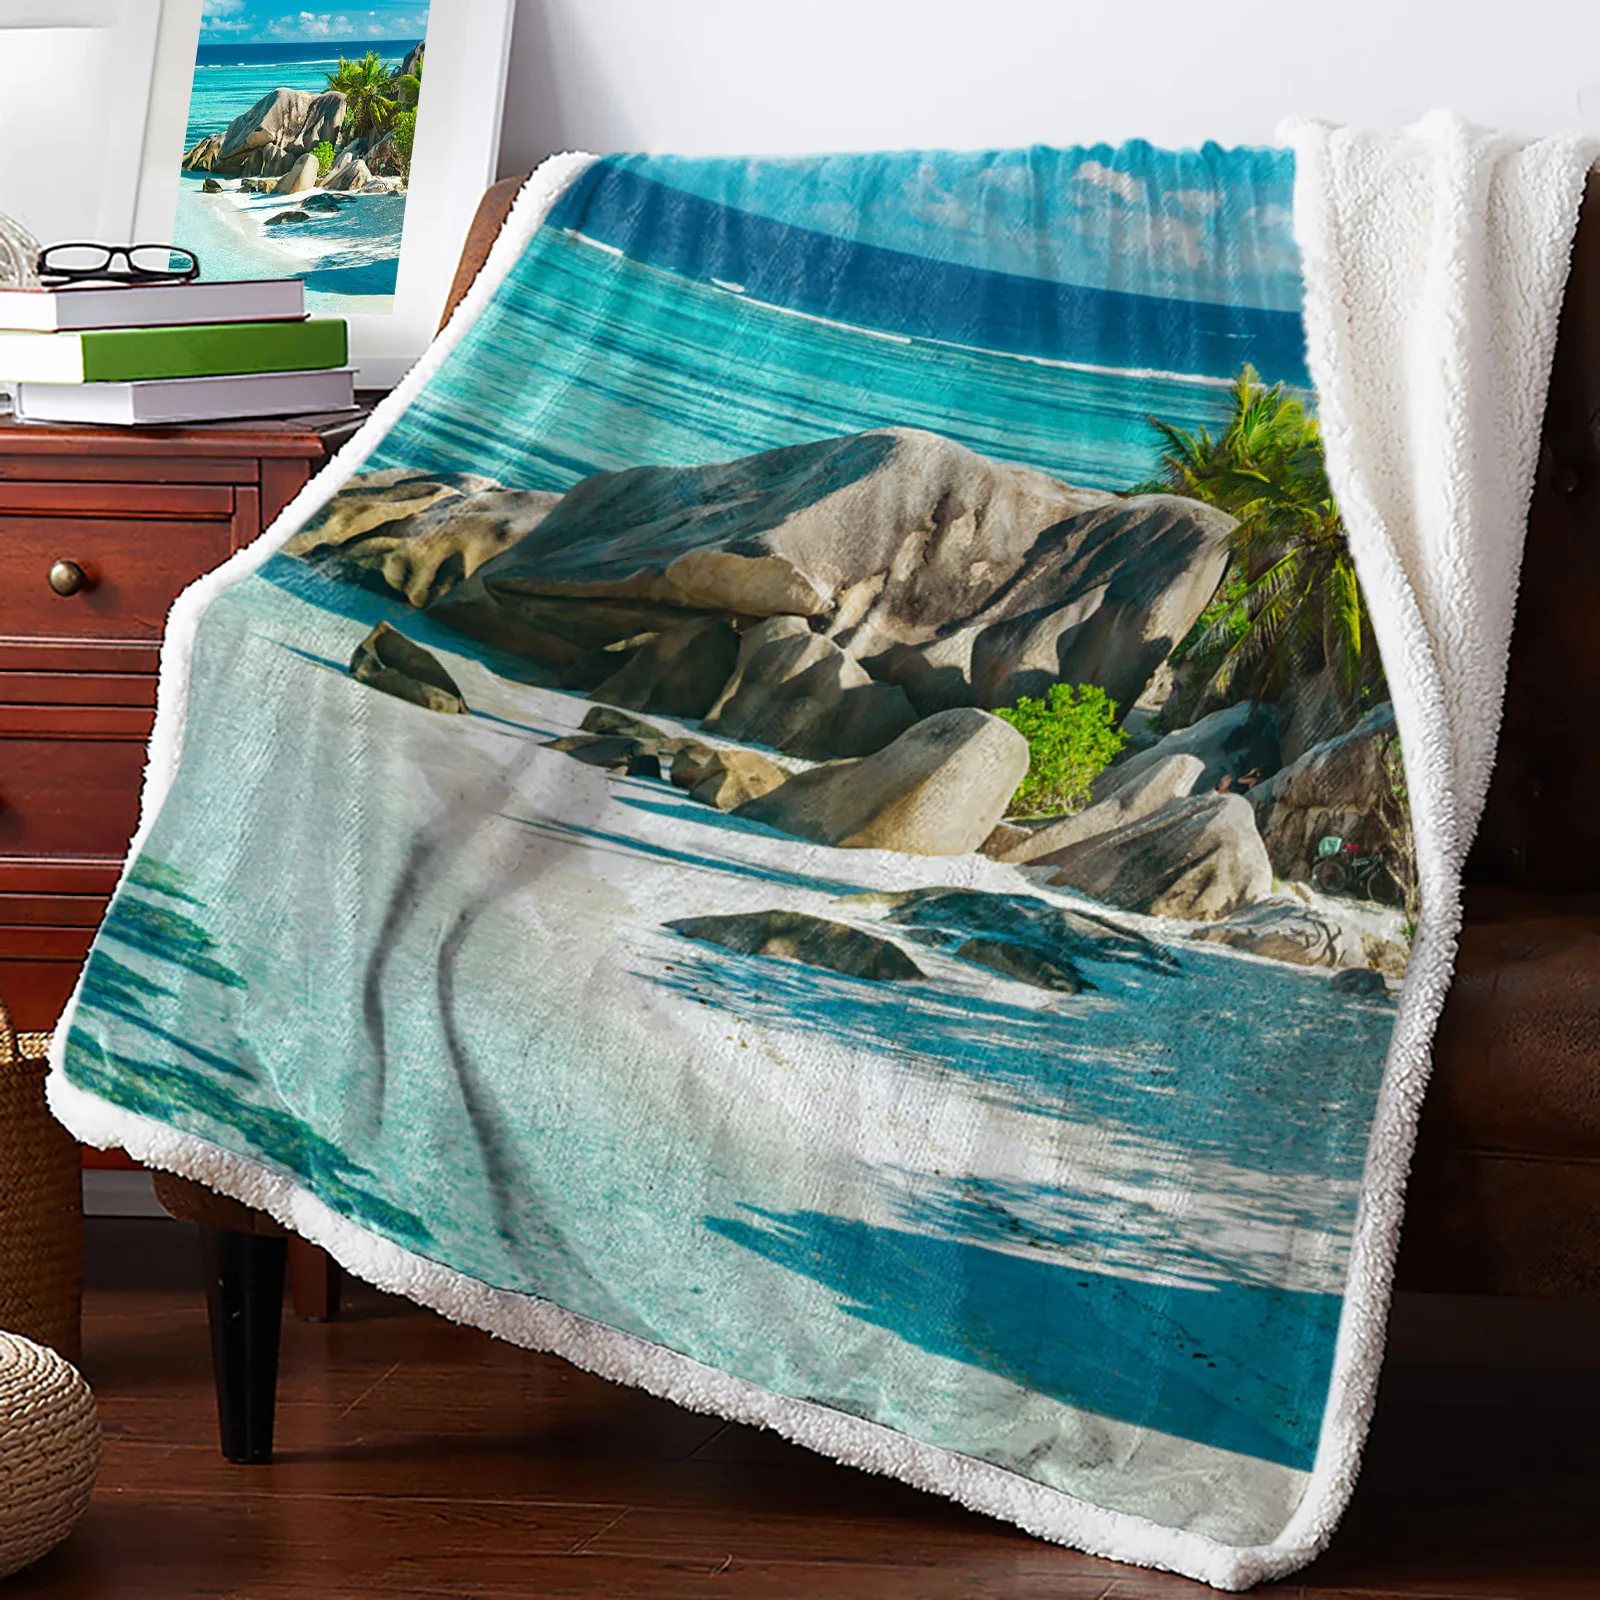 

Пляжное теплое кашемировое одеяло с камнями, зимнее одеяло для кровати, шерстяное покрывало для офиса